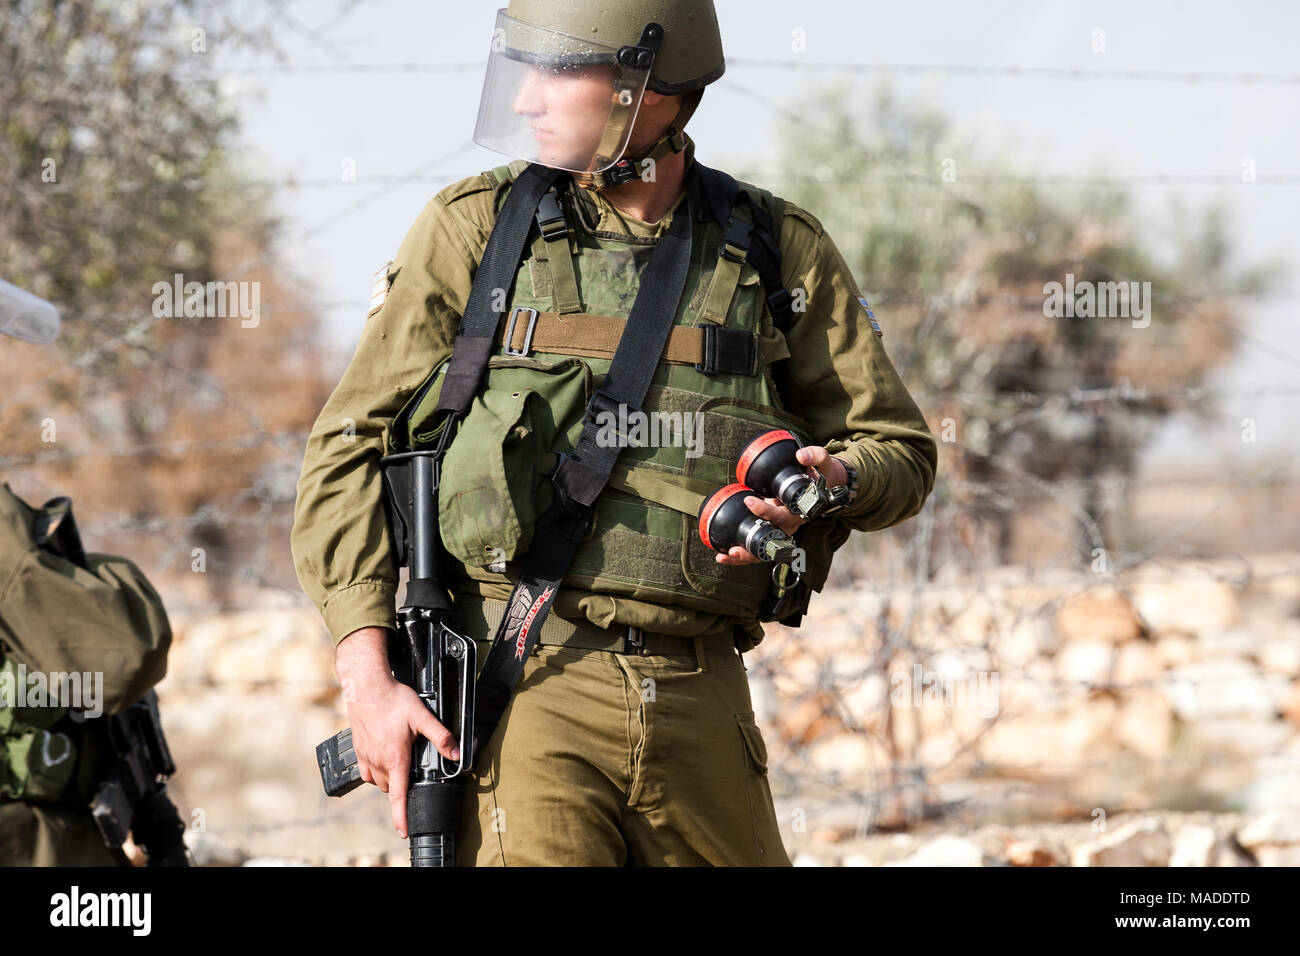 Bilin, Palestina, Dicembre 31, 2010: Israele Defense Force soldato è azienda le scatole metalliche del gas lacrimogeno durante manifestazioni settimanali contro il territorio palestinese Foto Stock